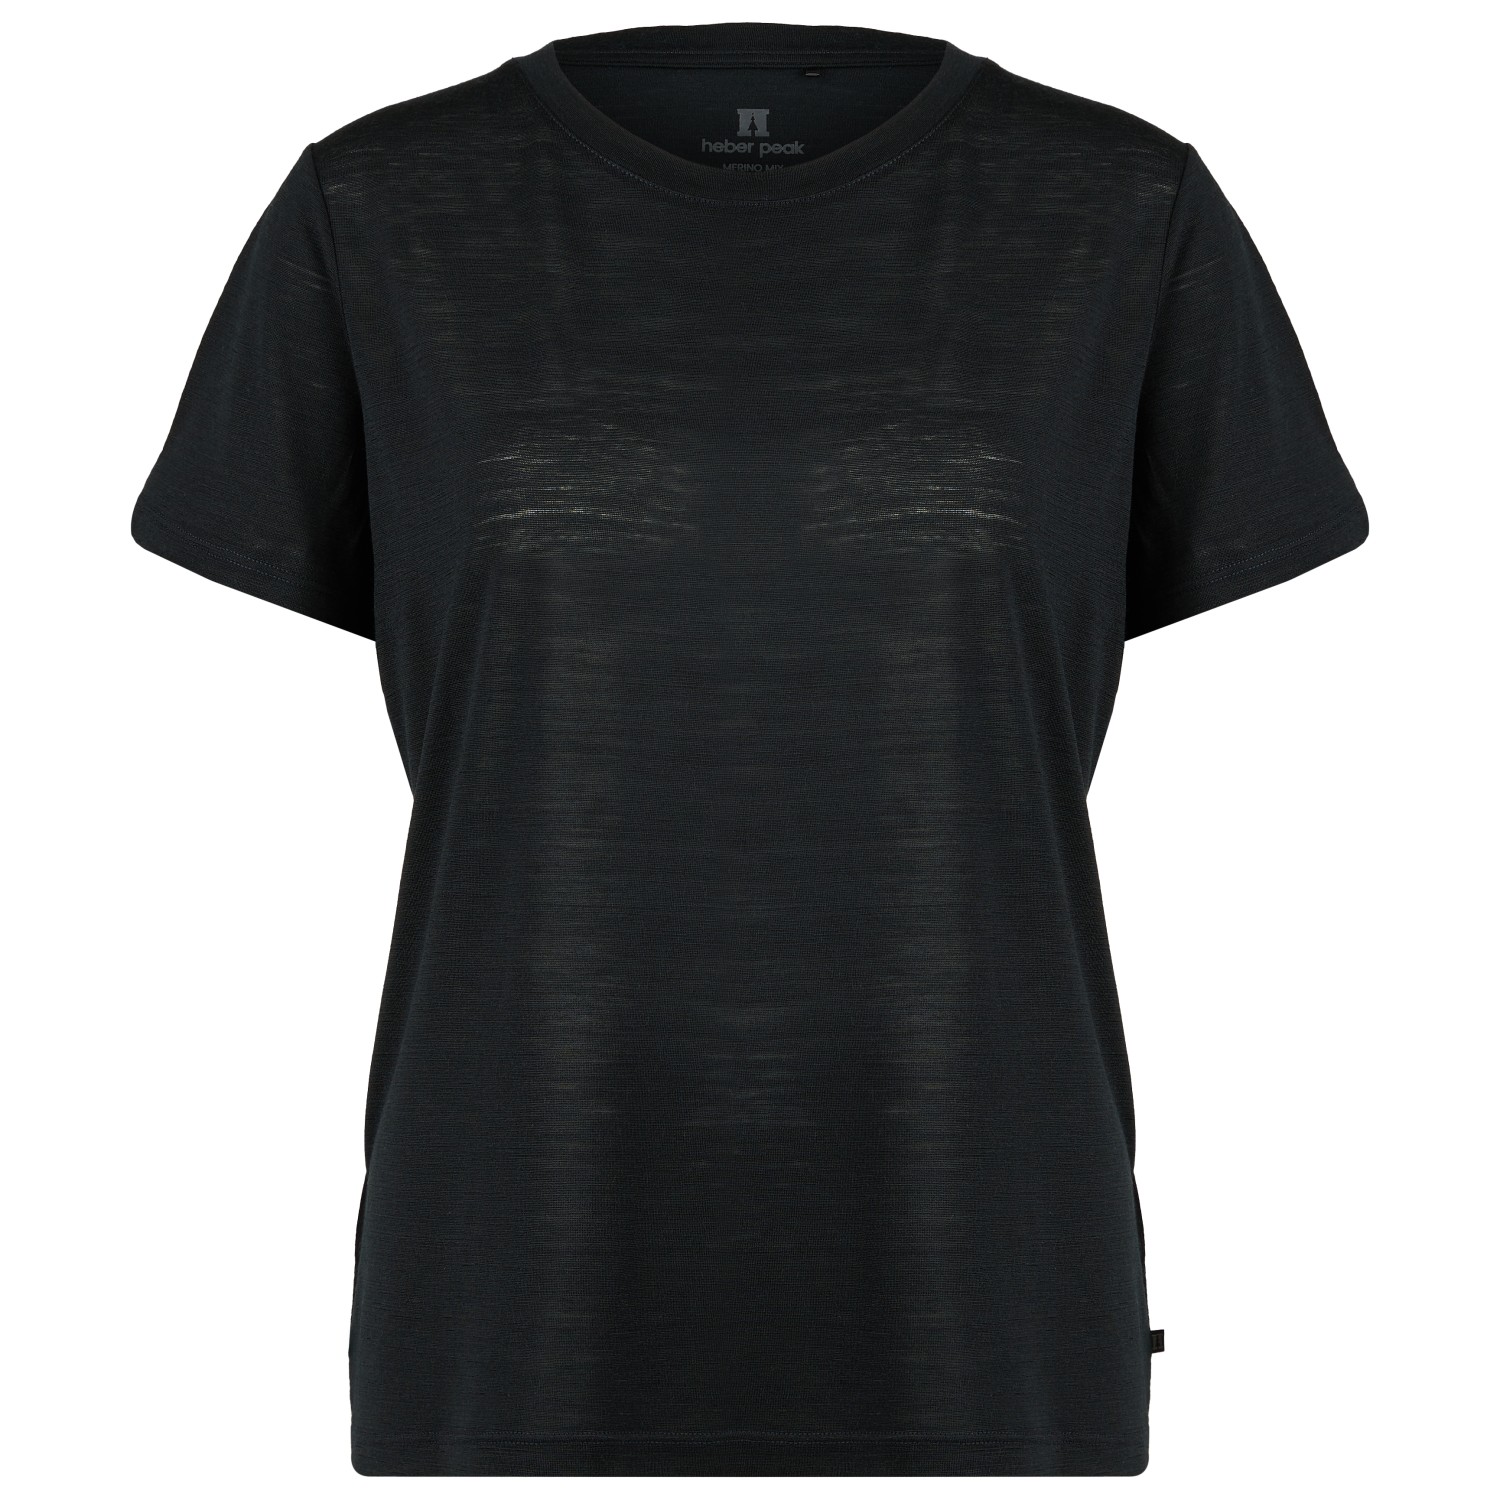 Рубашка из мериноса Heber Peak Women's MerinoMix150 PineconeHe T Shirt, черный